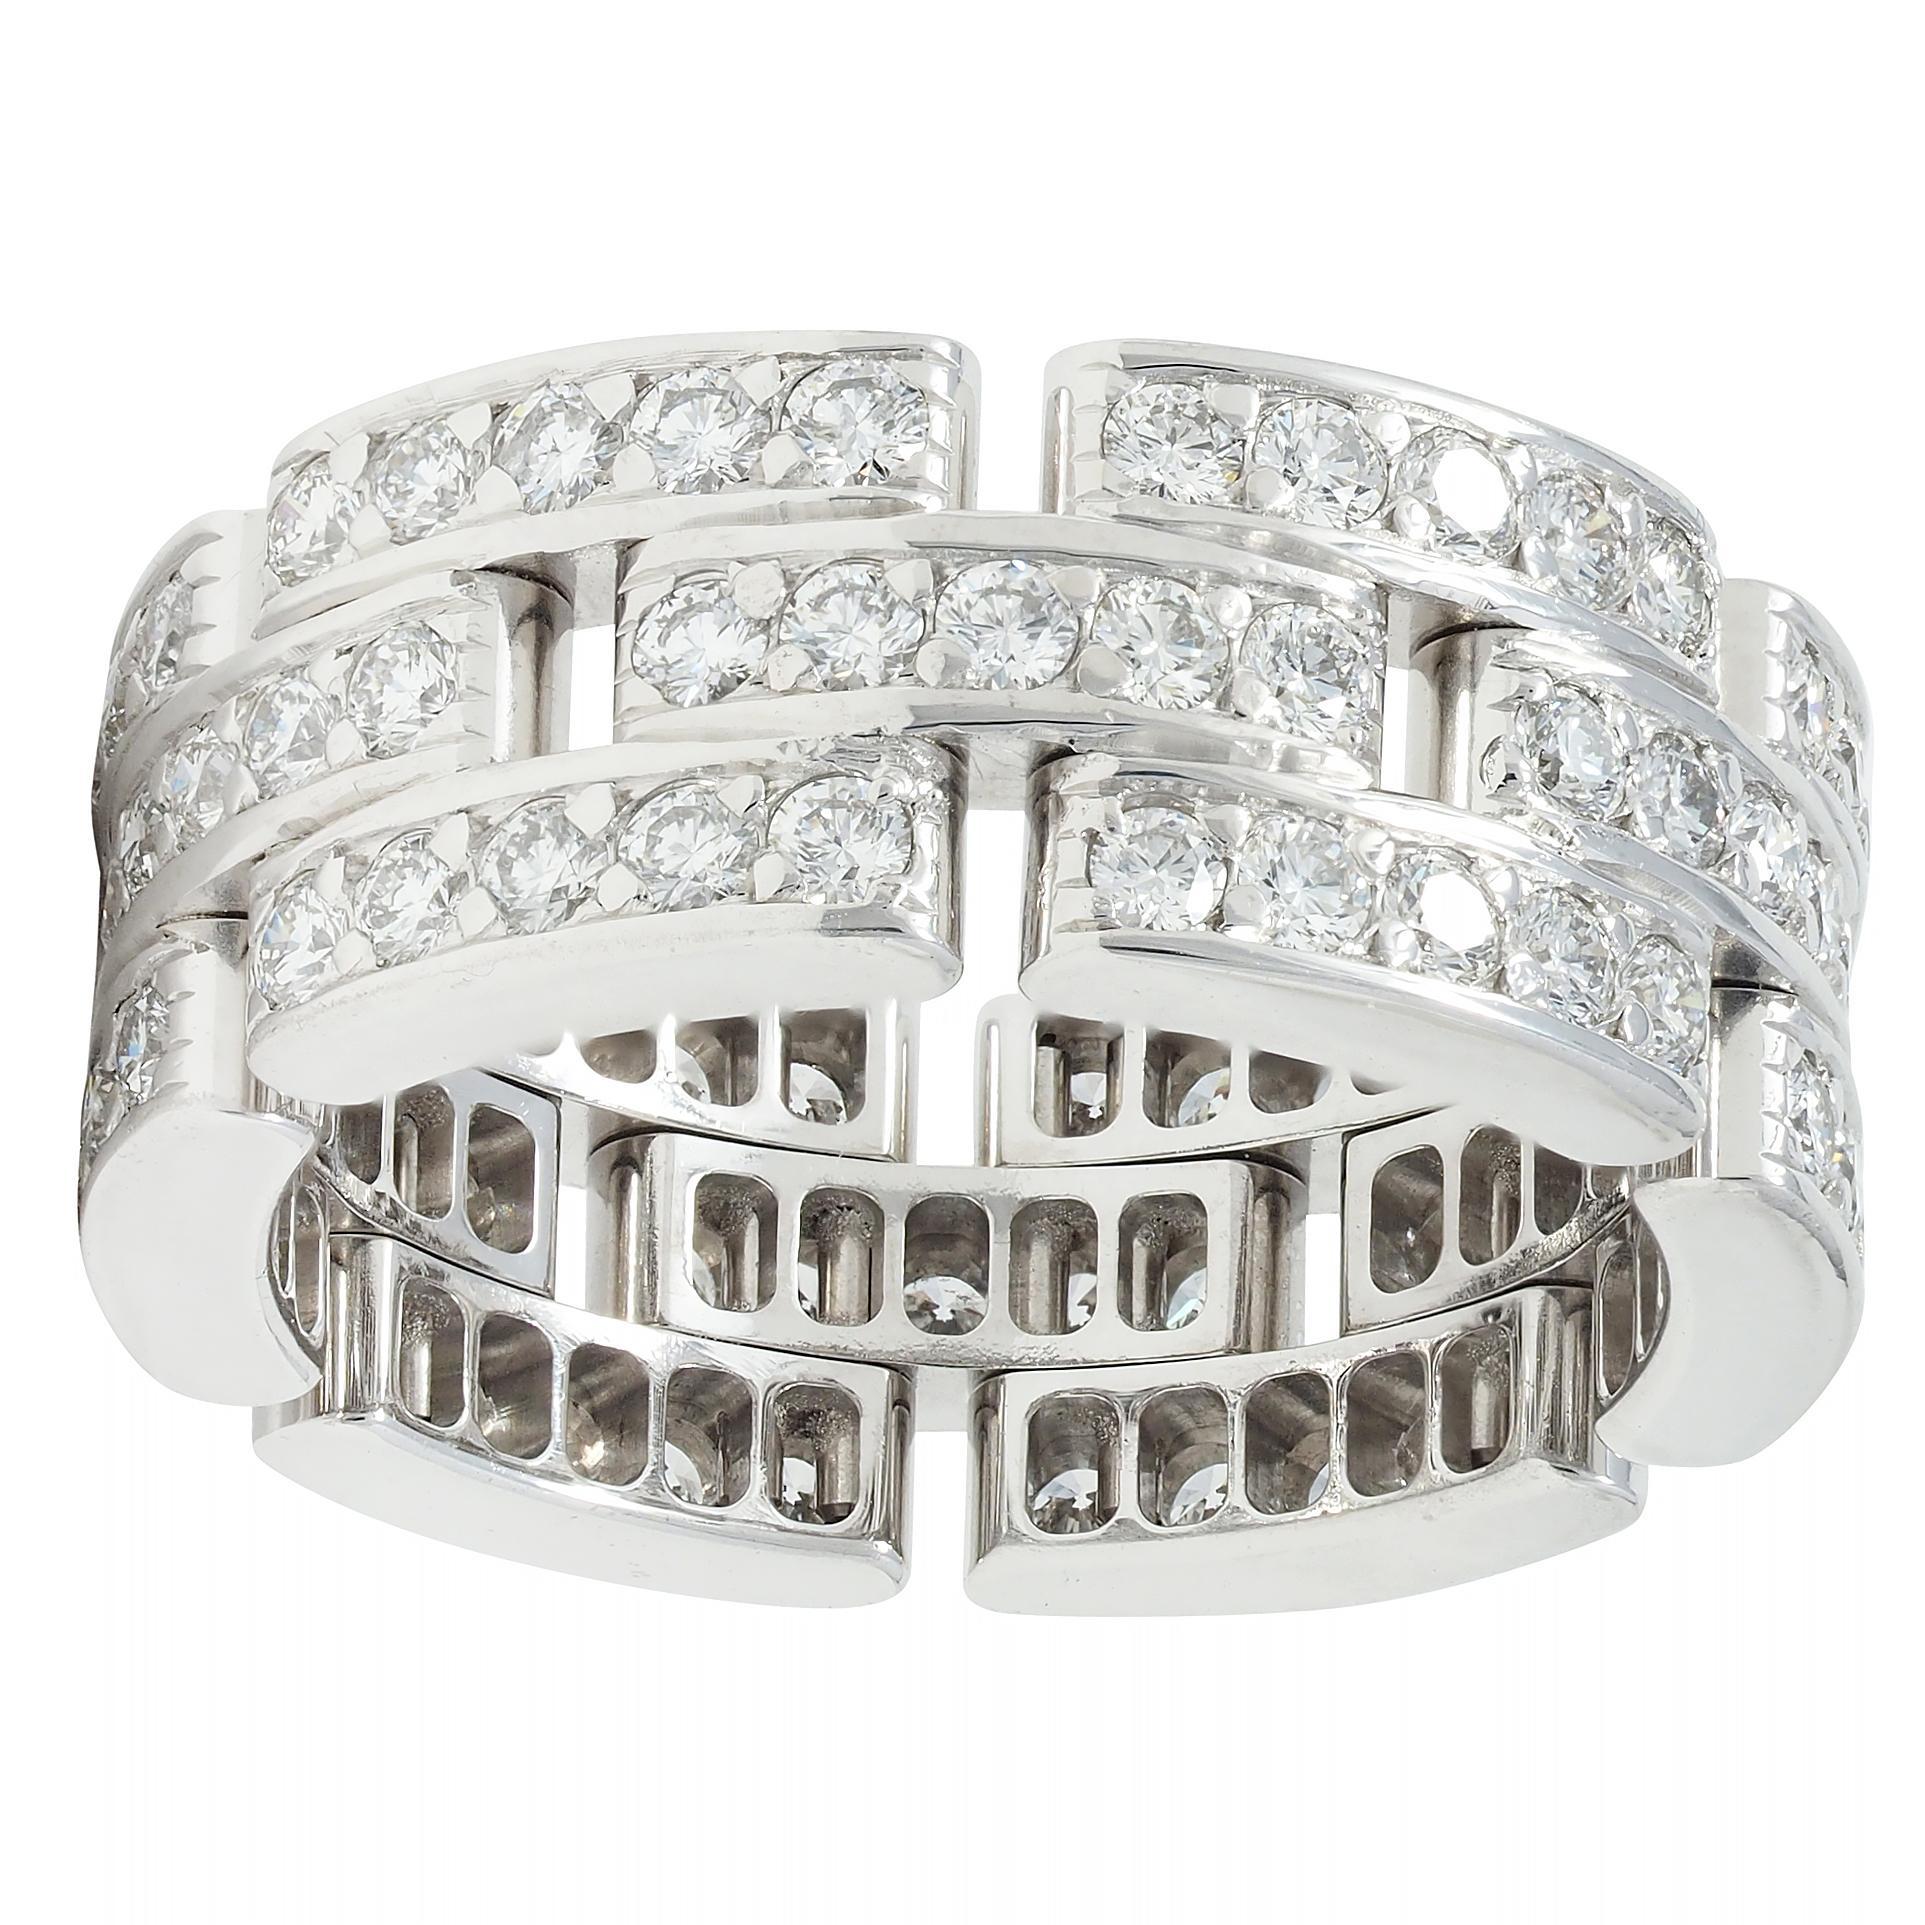 Conçu comme un large anneau percé d'un motif en forme de panthère.
Perles serties de diamants ronds de taille brillant
D'un poids total d'environ 1.40 carats 
Couleur F/G et clarté VS1
Complété par des bords très polis
Estampillé pour l'or 18